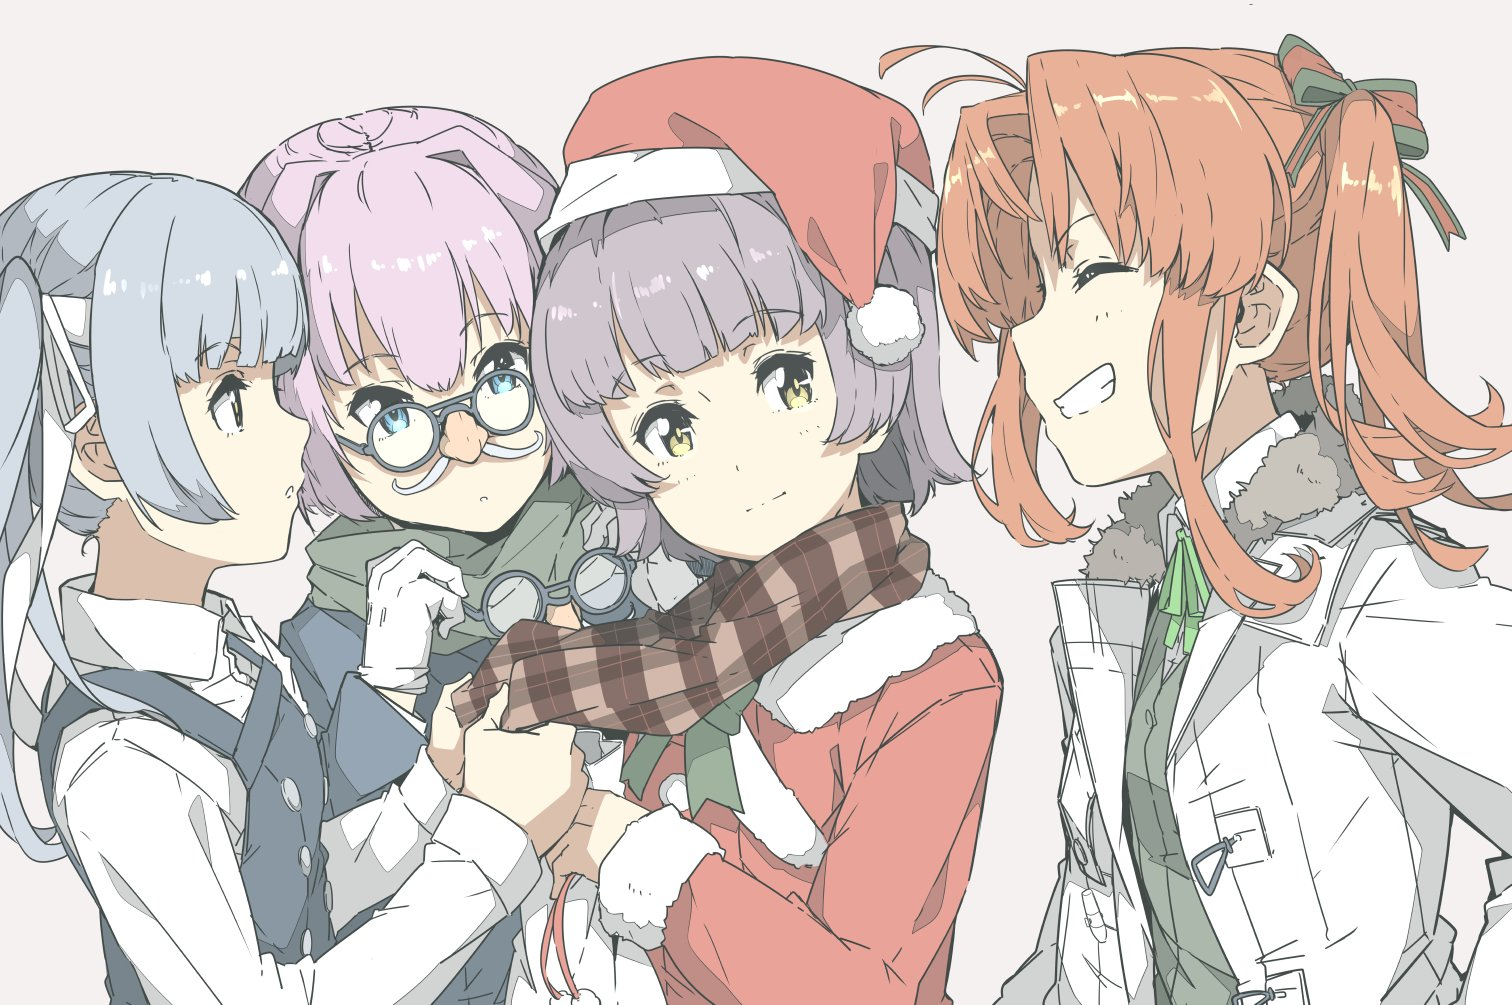 Christmas presents - Anime, Anime art, Kantai collection, Kasumi, Shiranui, Arare, Kagerou, Kasumi (Kantai Collection)